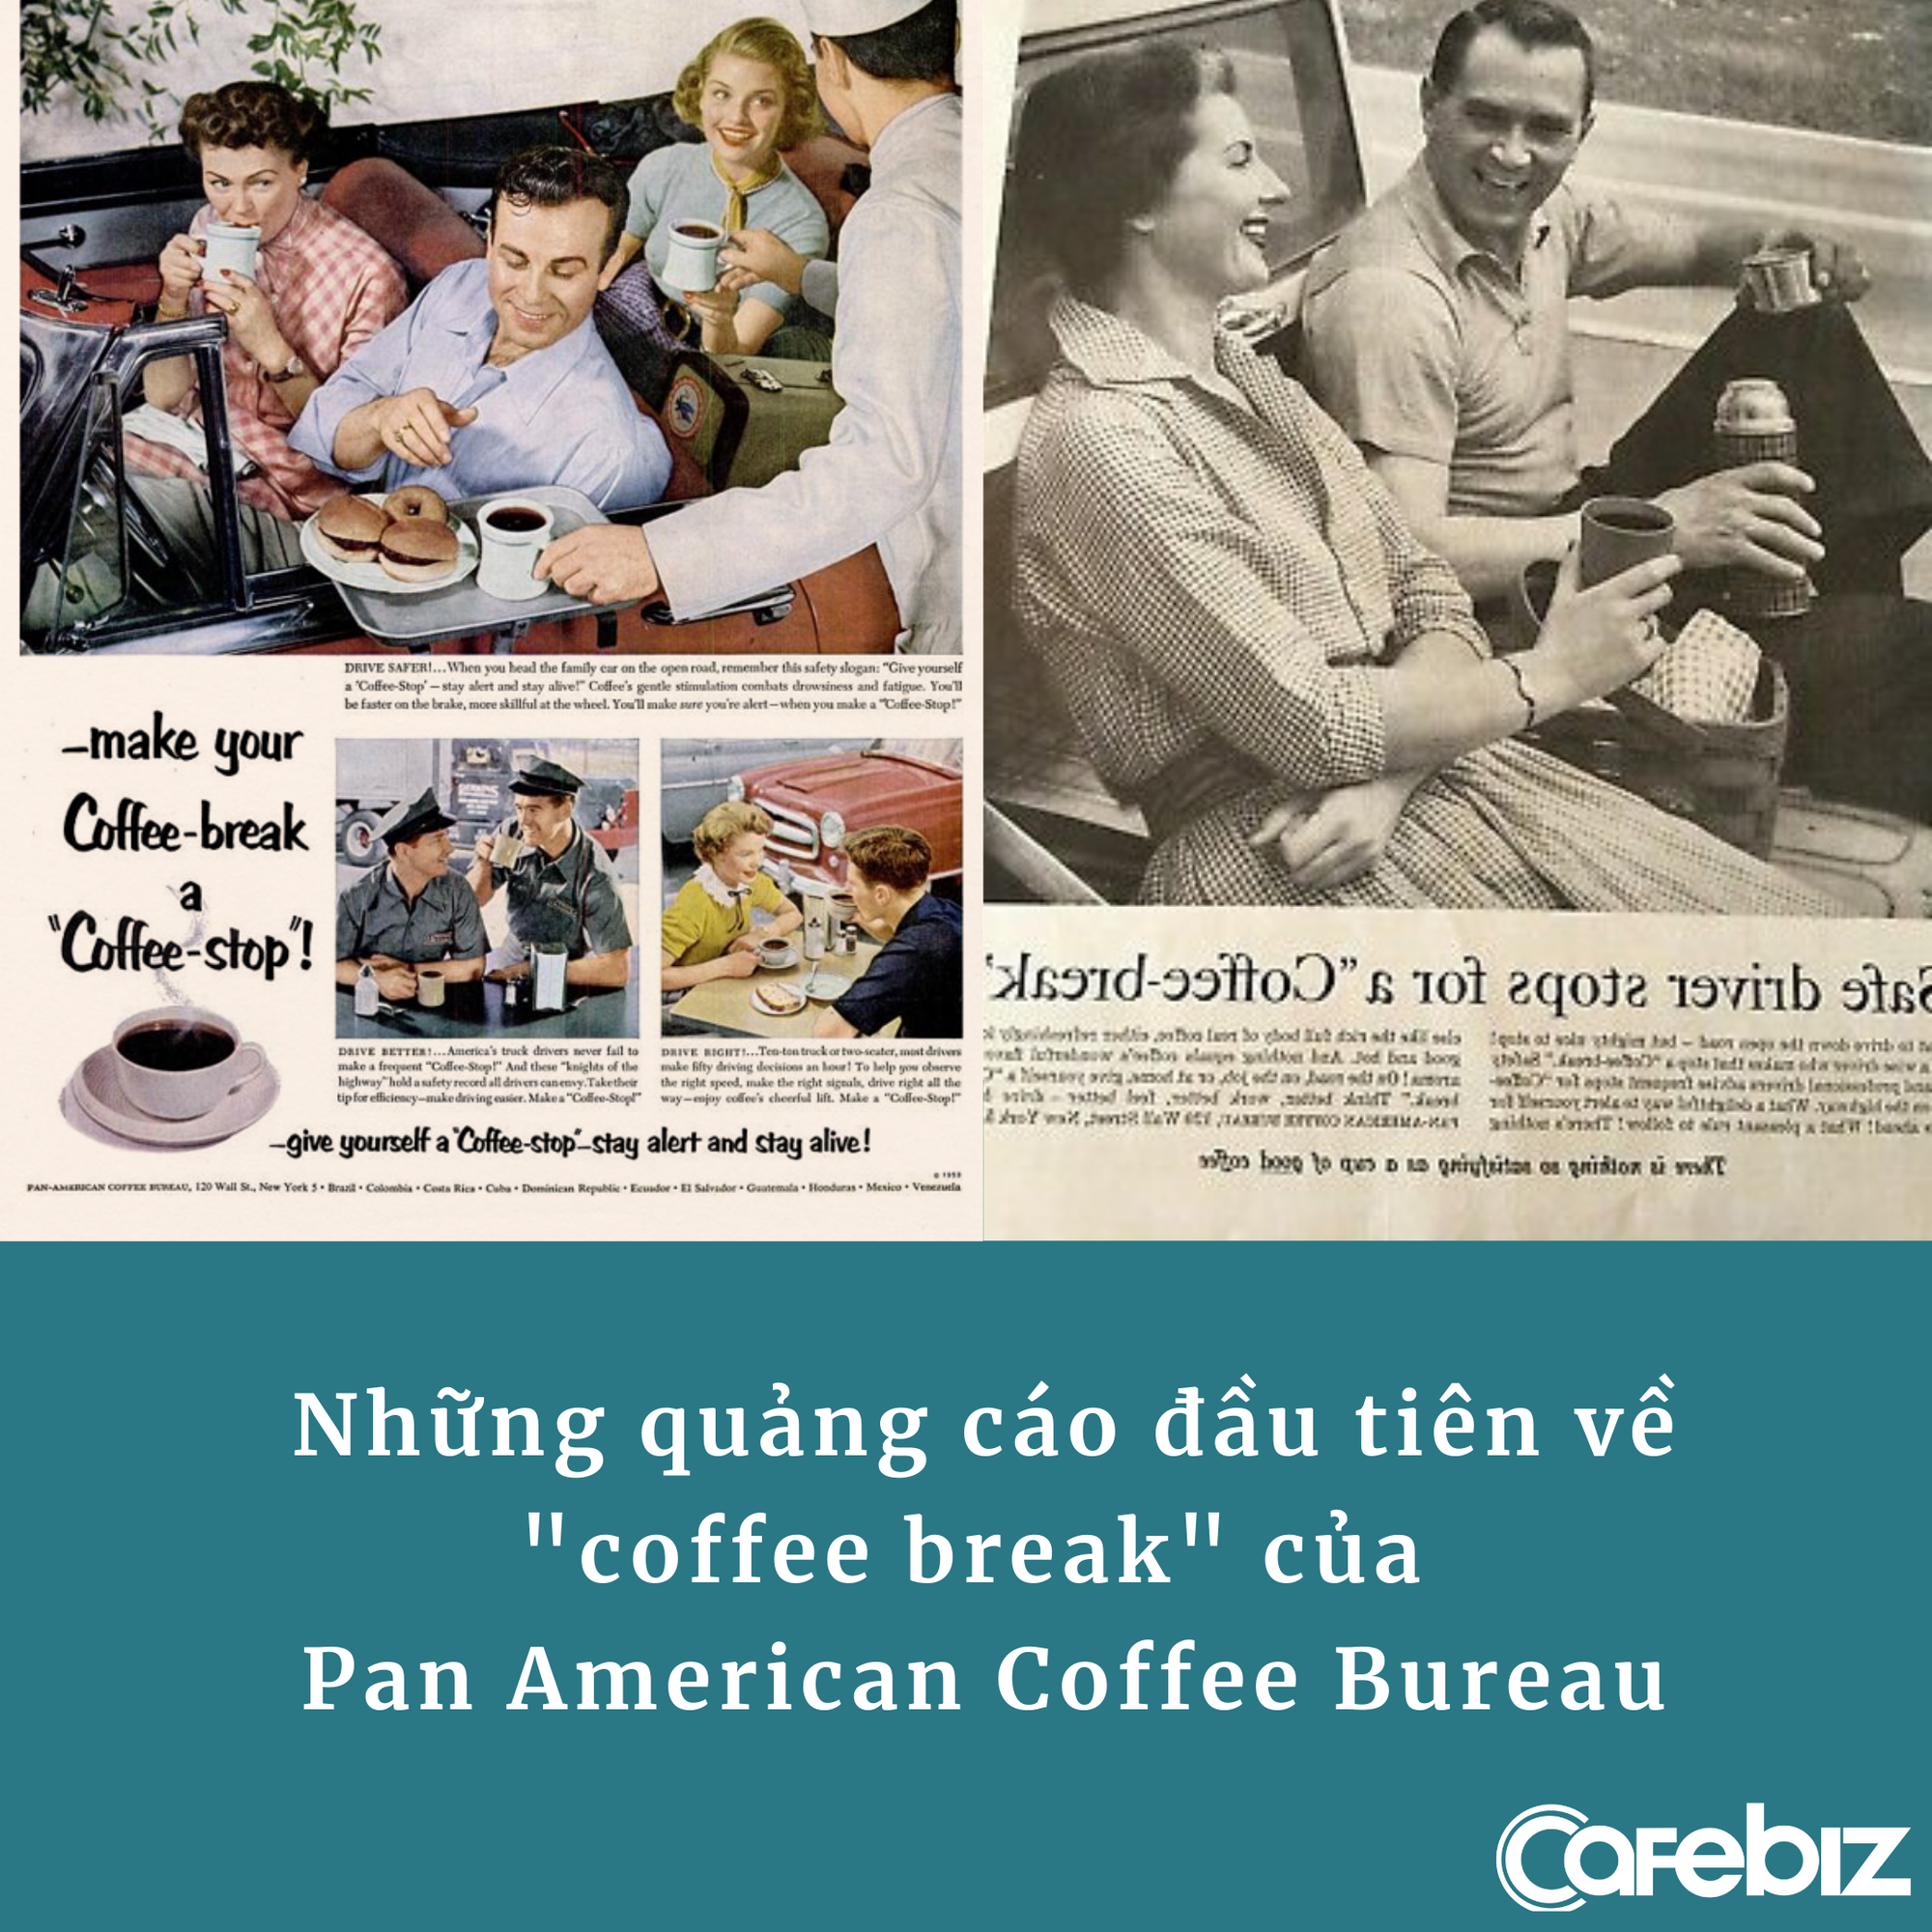 Chiến dịch marketing để đời của 1 hãng cà phê: Khiến 70% công ty Mỹ thi nhau mua cà phê cho nhân viên, doanh số tăng vọt chỉ trong thời gian ngắn - Ảnh 2.